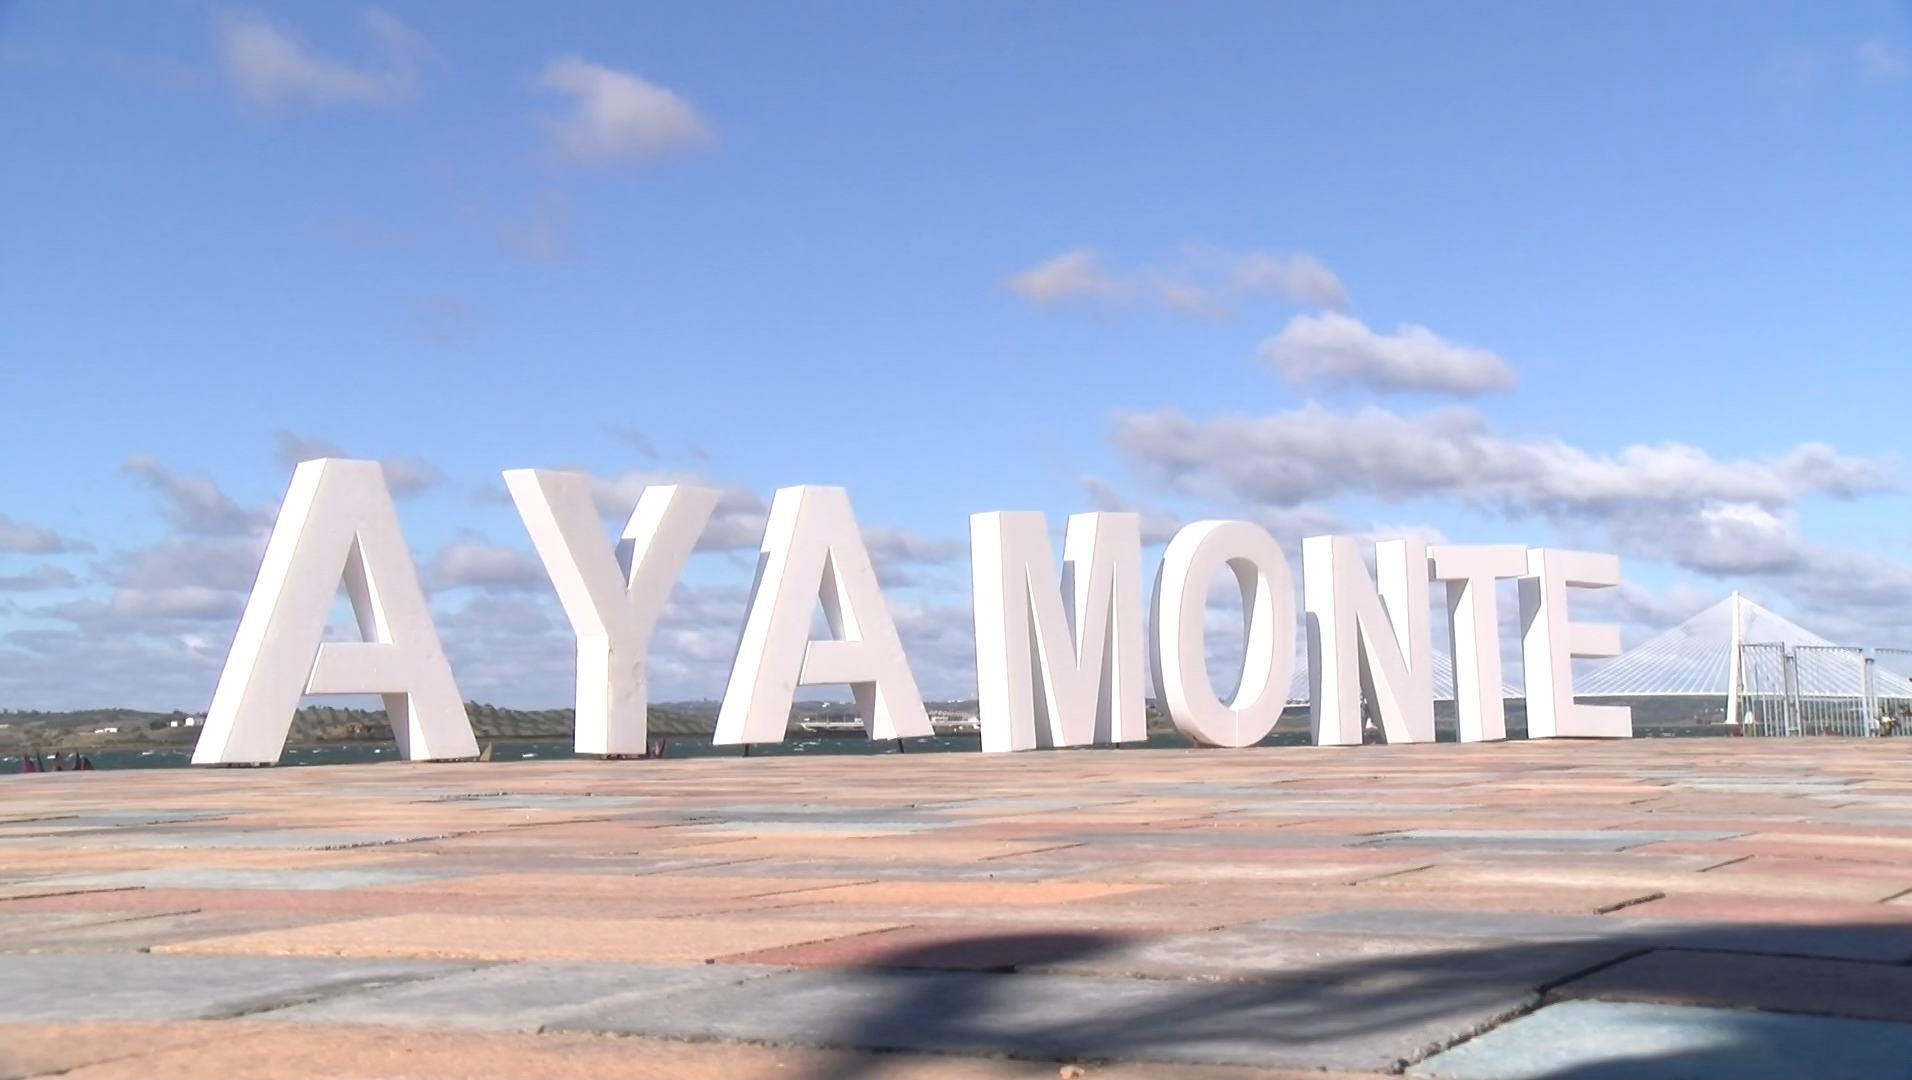 La incidencia de contagios se dispara en Ayamonte